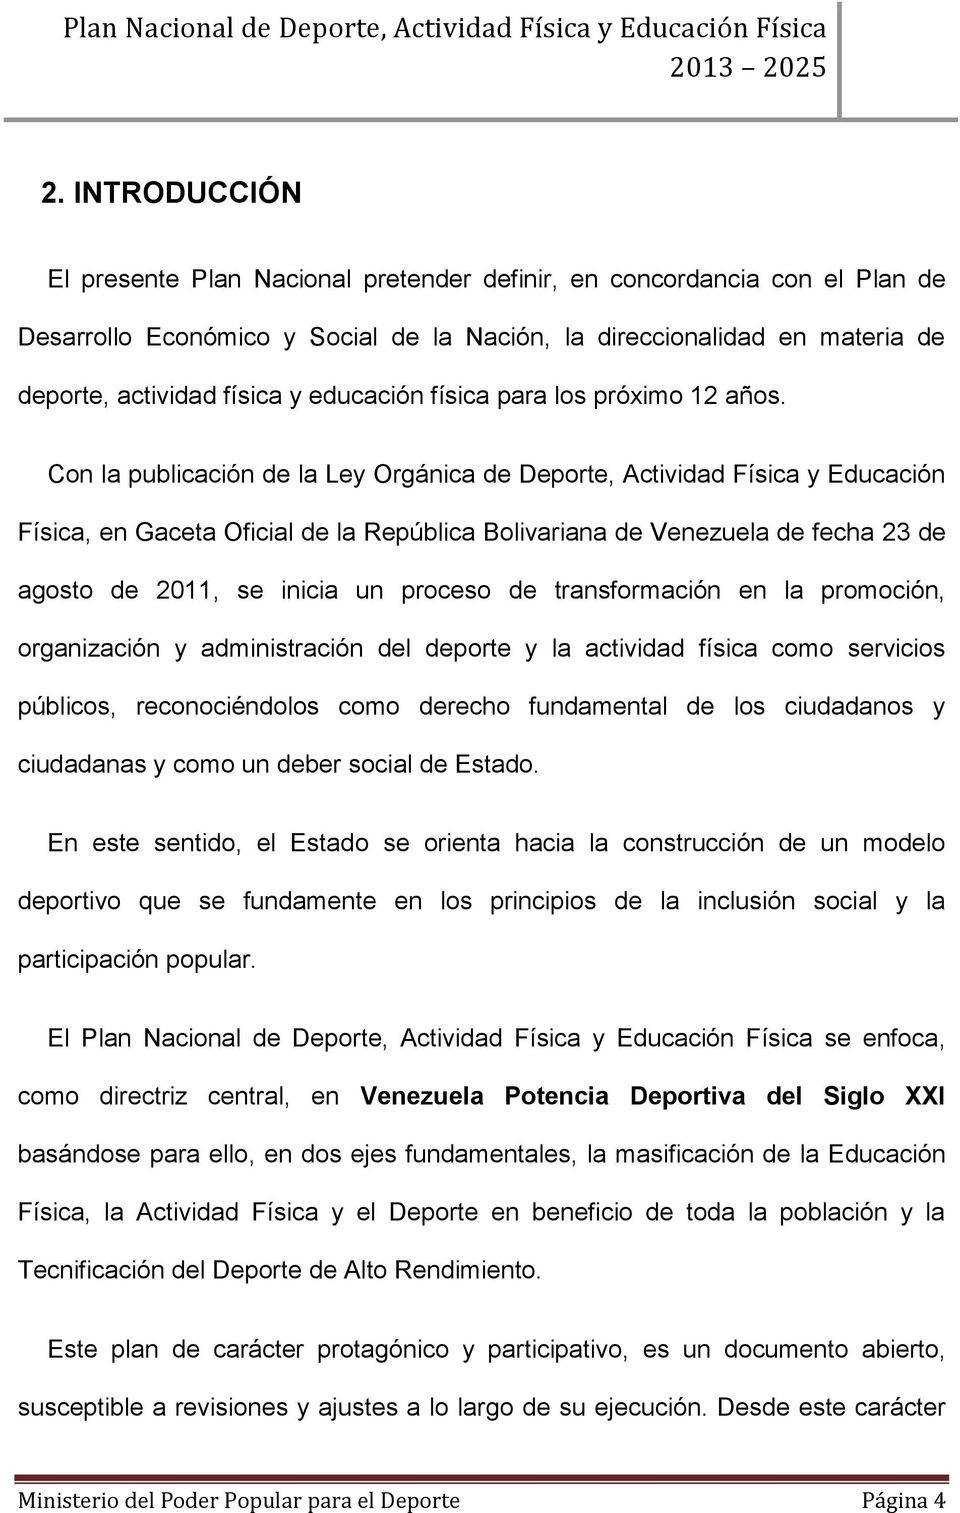 Con la publicación de la Ley Orgánica de Deporte, Actividad Física y Educación Física, en Gaceta Oficial de la República Bolivariana de Venezuela de fecha 23 de agosto de 2011, se inicia un proceso